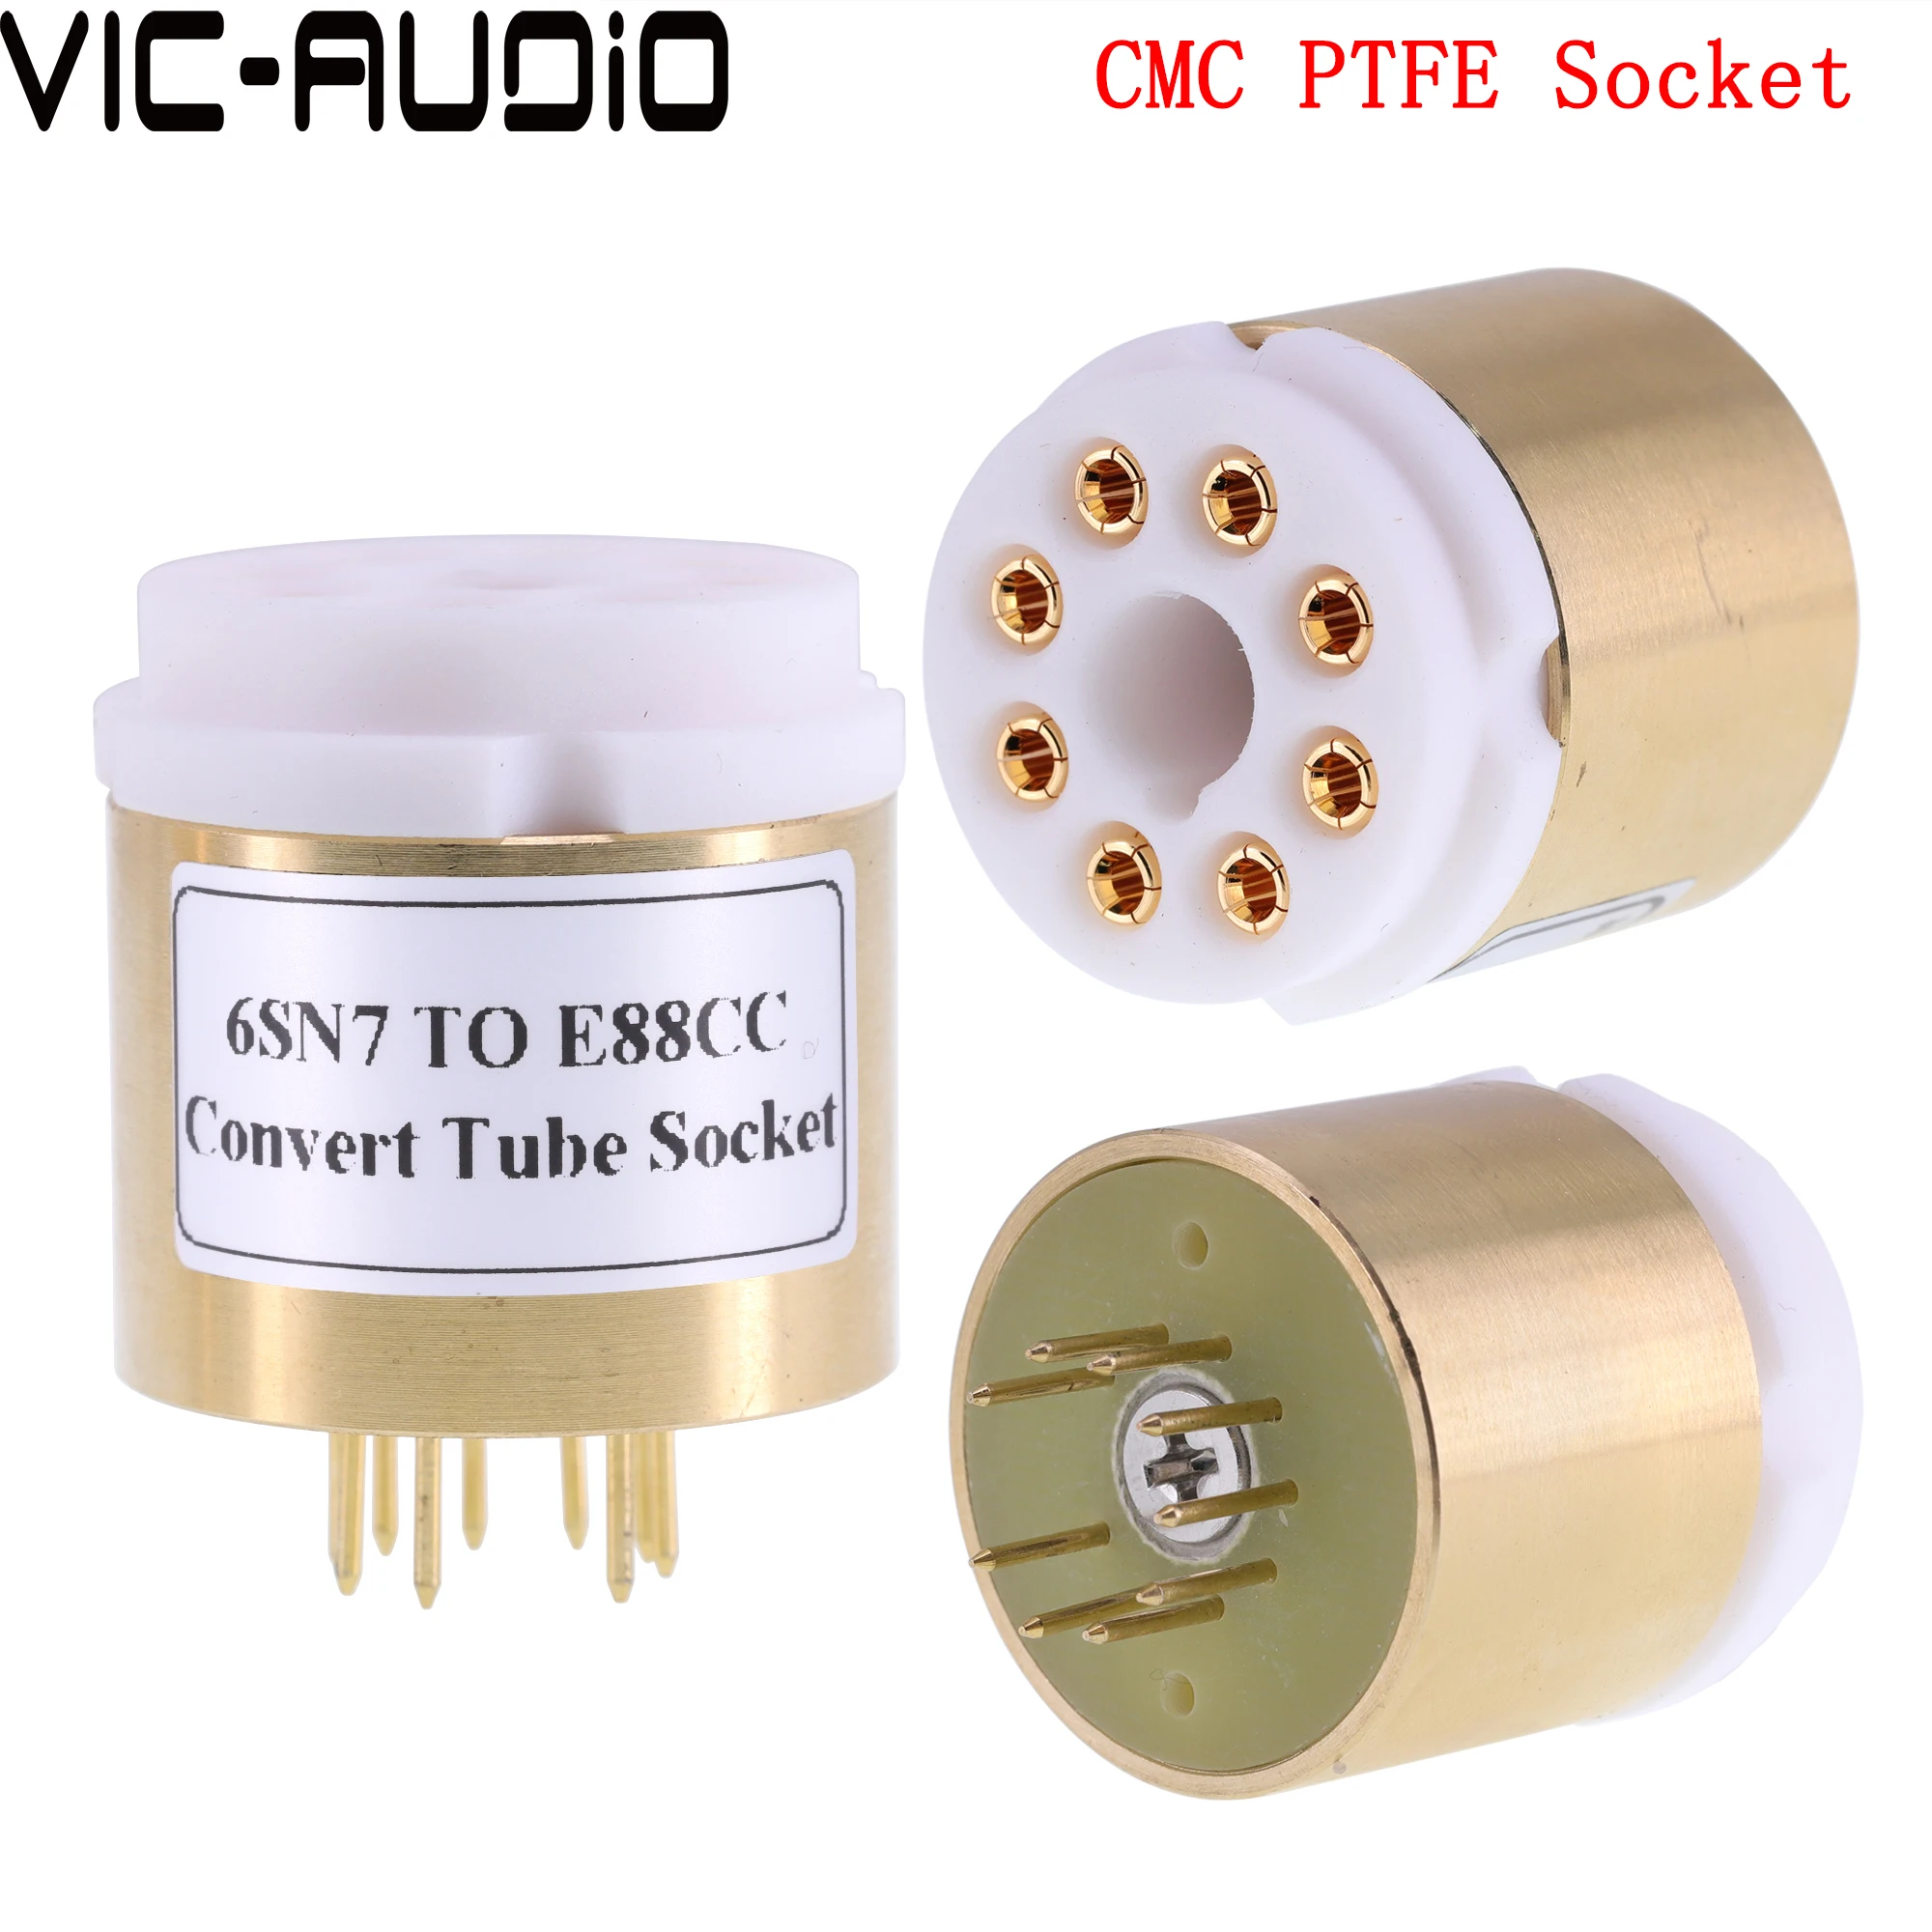 Amplifier Vakuumrohr CV181 6SL7 6N8P 6N9P 6SN7 bis E88CC ECC88 6DJ8 6N2 6922 DIY Audio Vakuum -Rohr -Verstärker -Verstärker -Konvertier -Sockeladapter